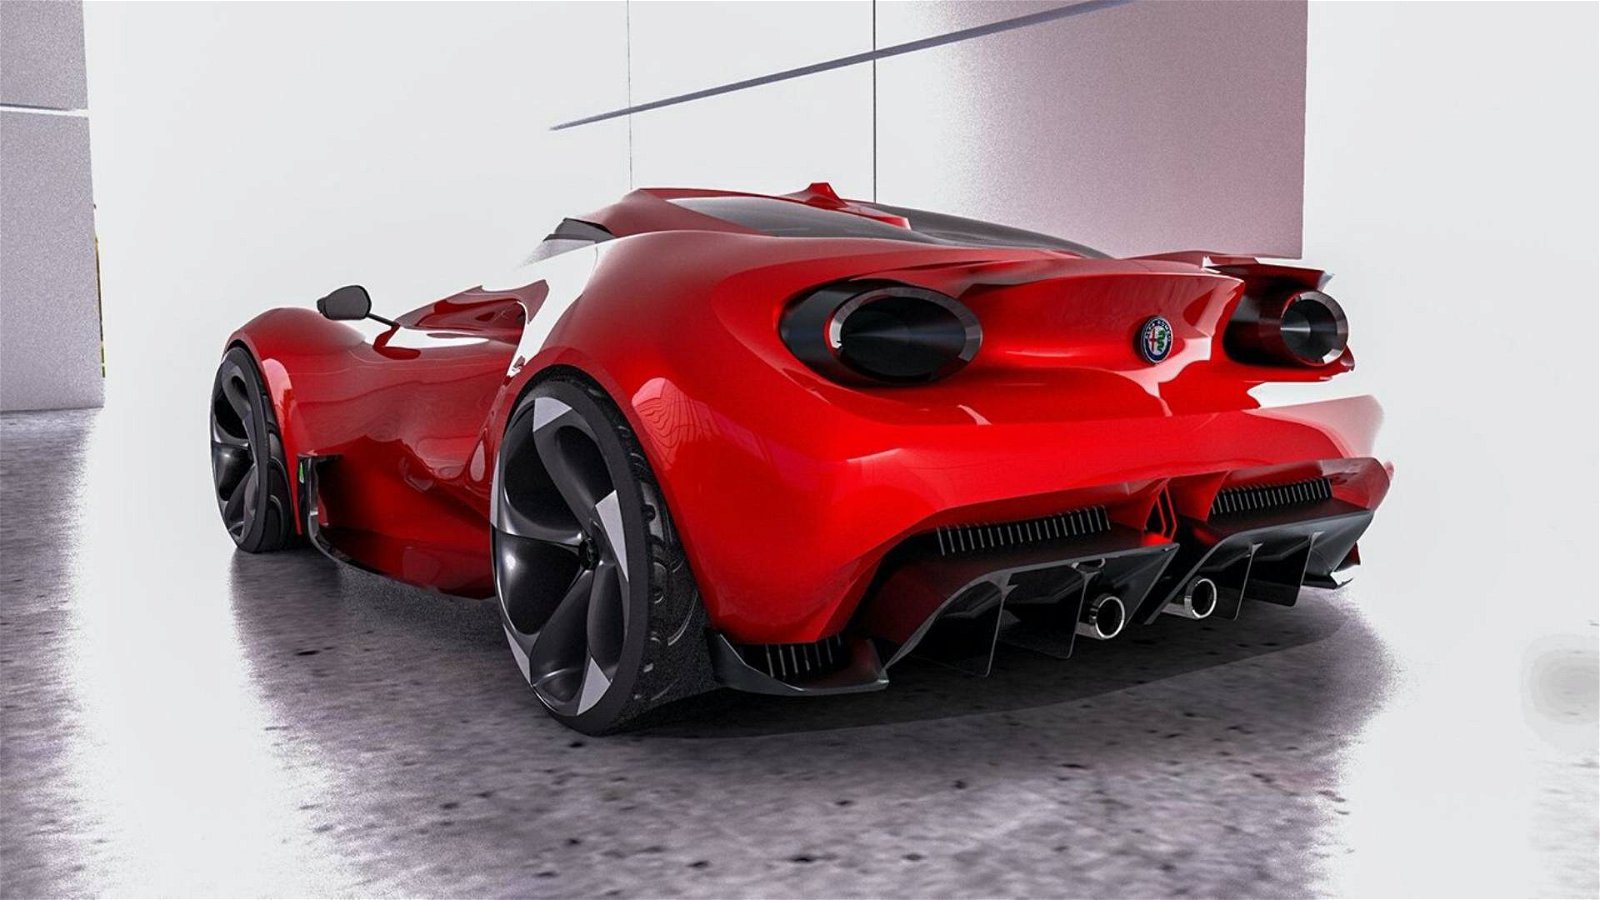 Immagine di Alfa Romeo 4C: come potrebbe essere la nuova generazione